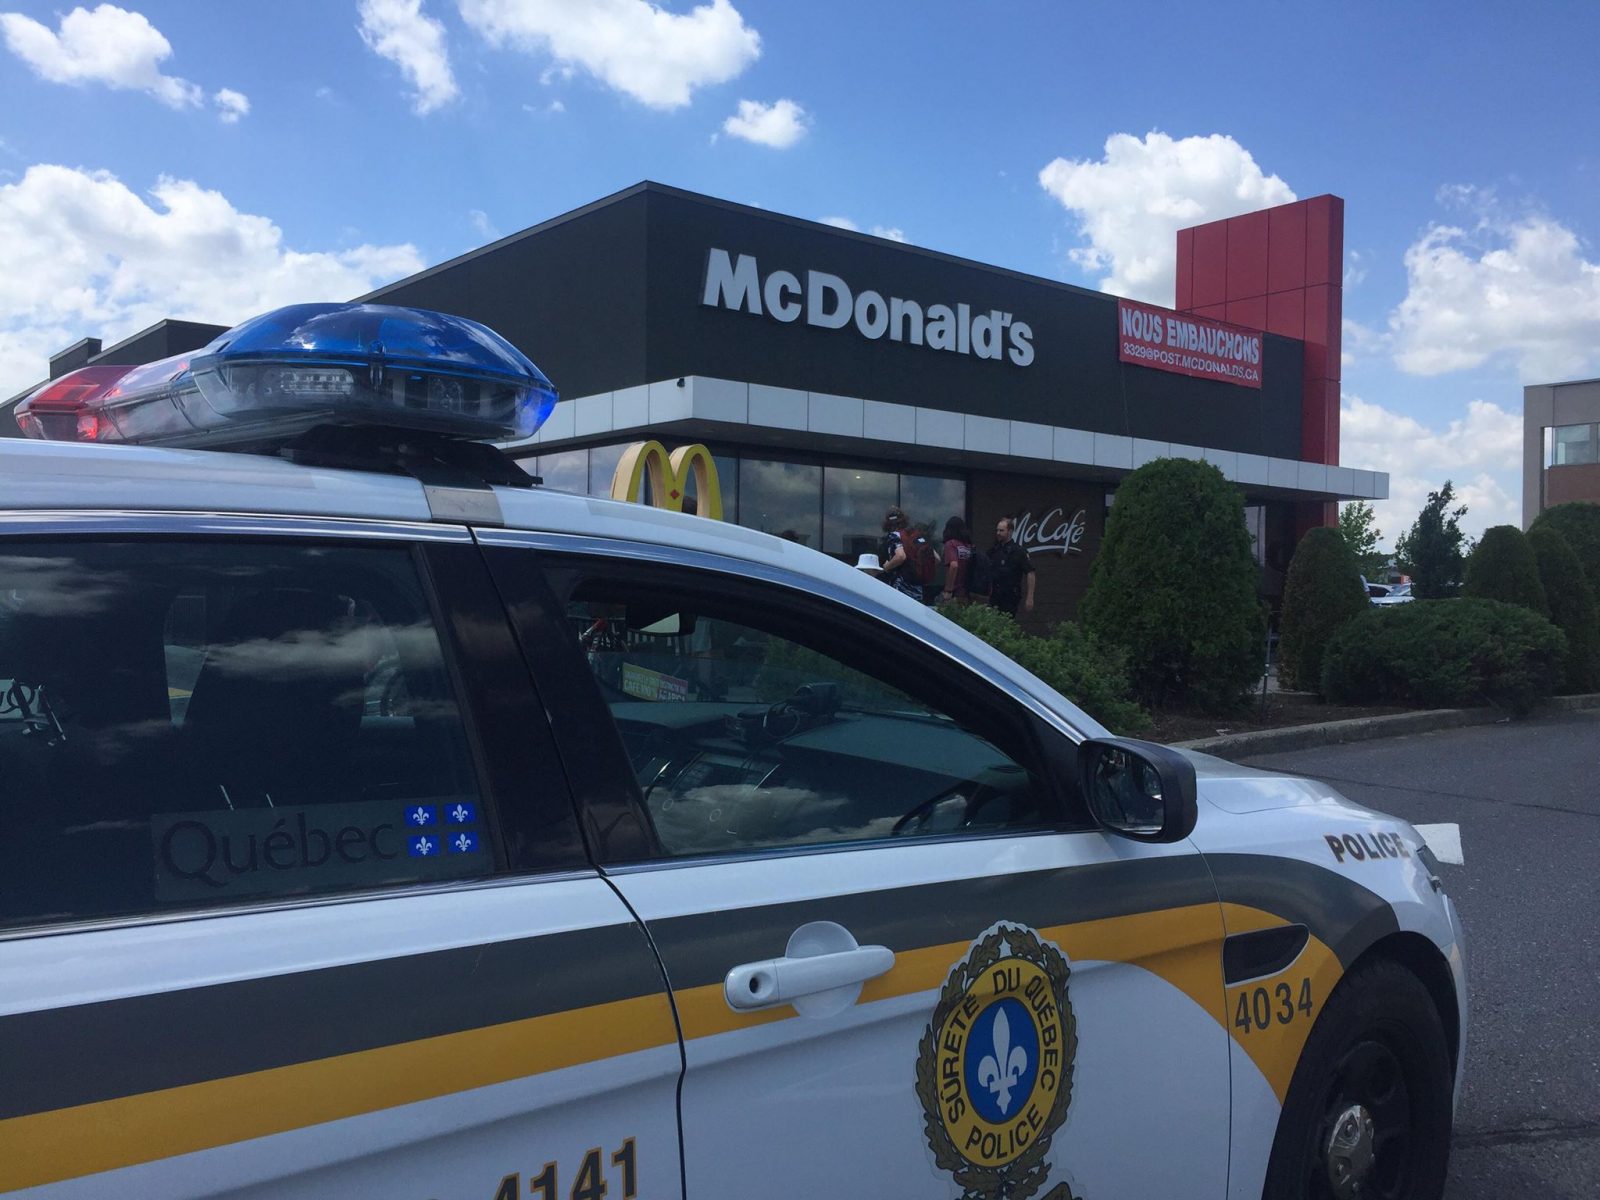 Alerte au colis : le McDonald’s évacué (MISE À JOUR)